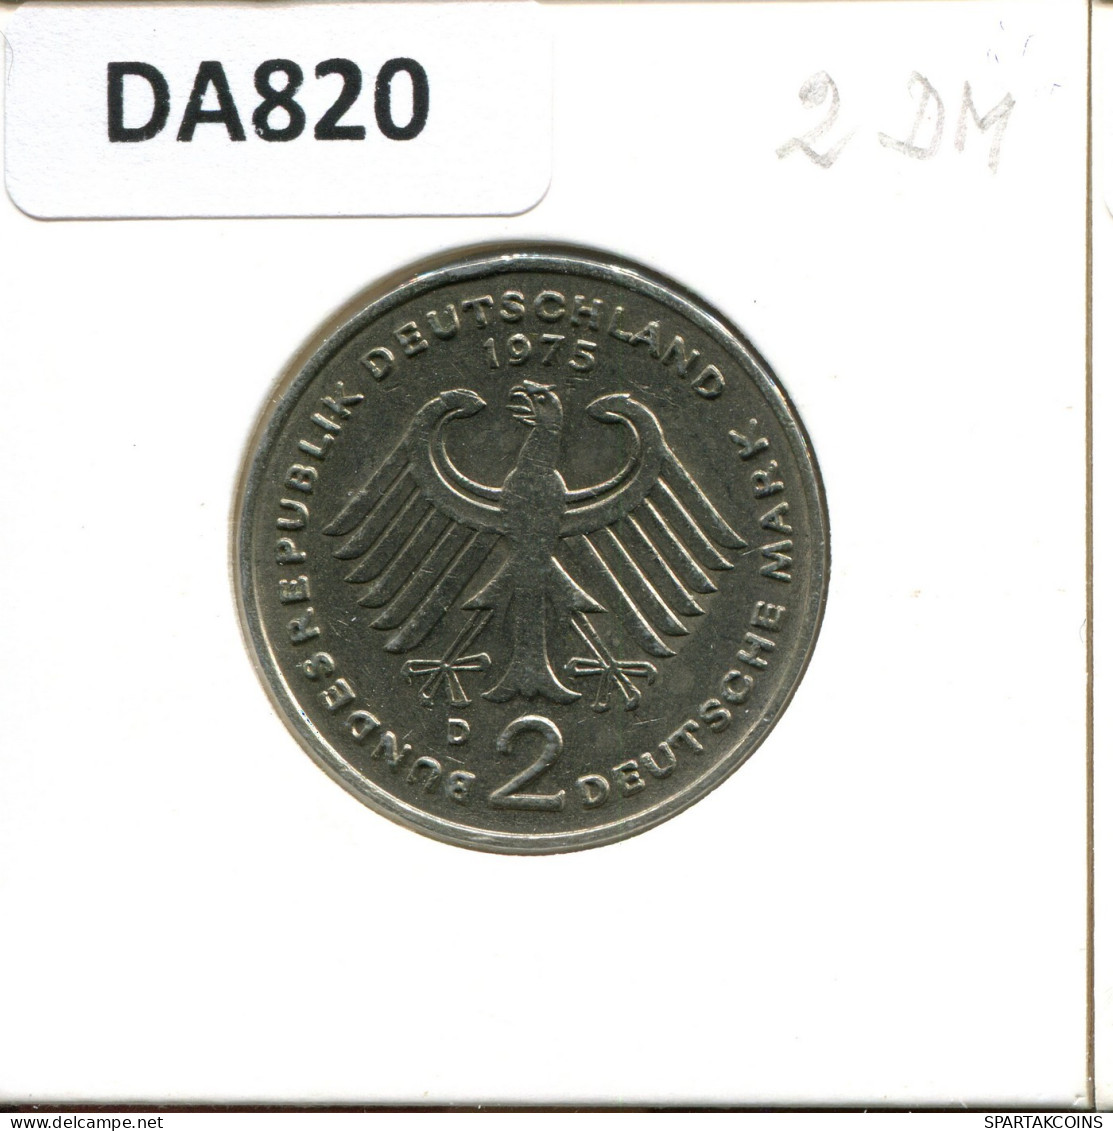 2 DM 1975 D K. ADENAUER BRD ALEMANIA Moneda GERMANY #DA820.E.A - 2 Marcos